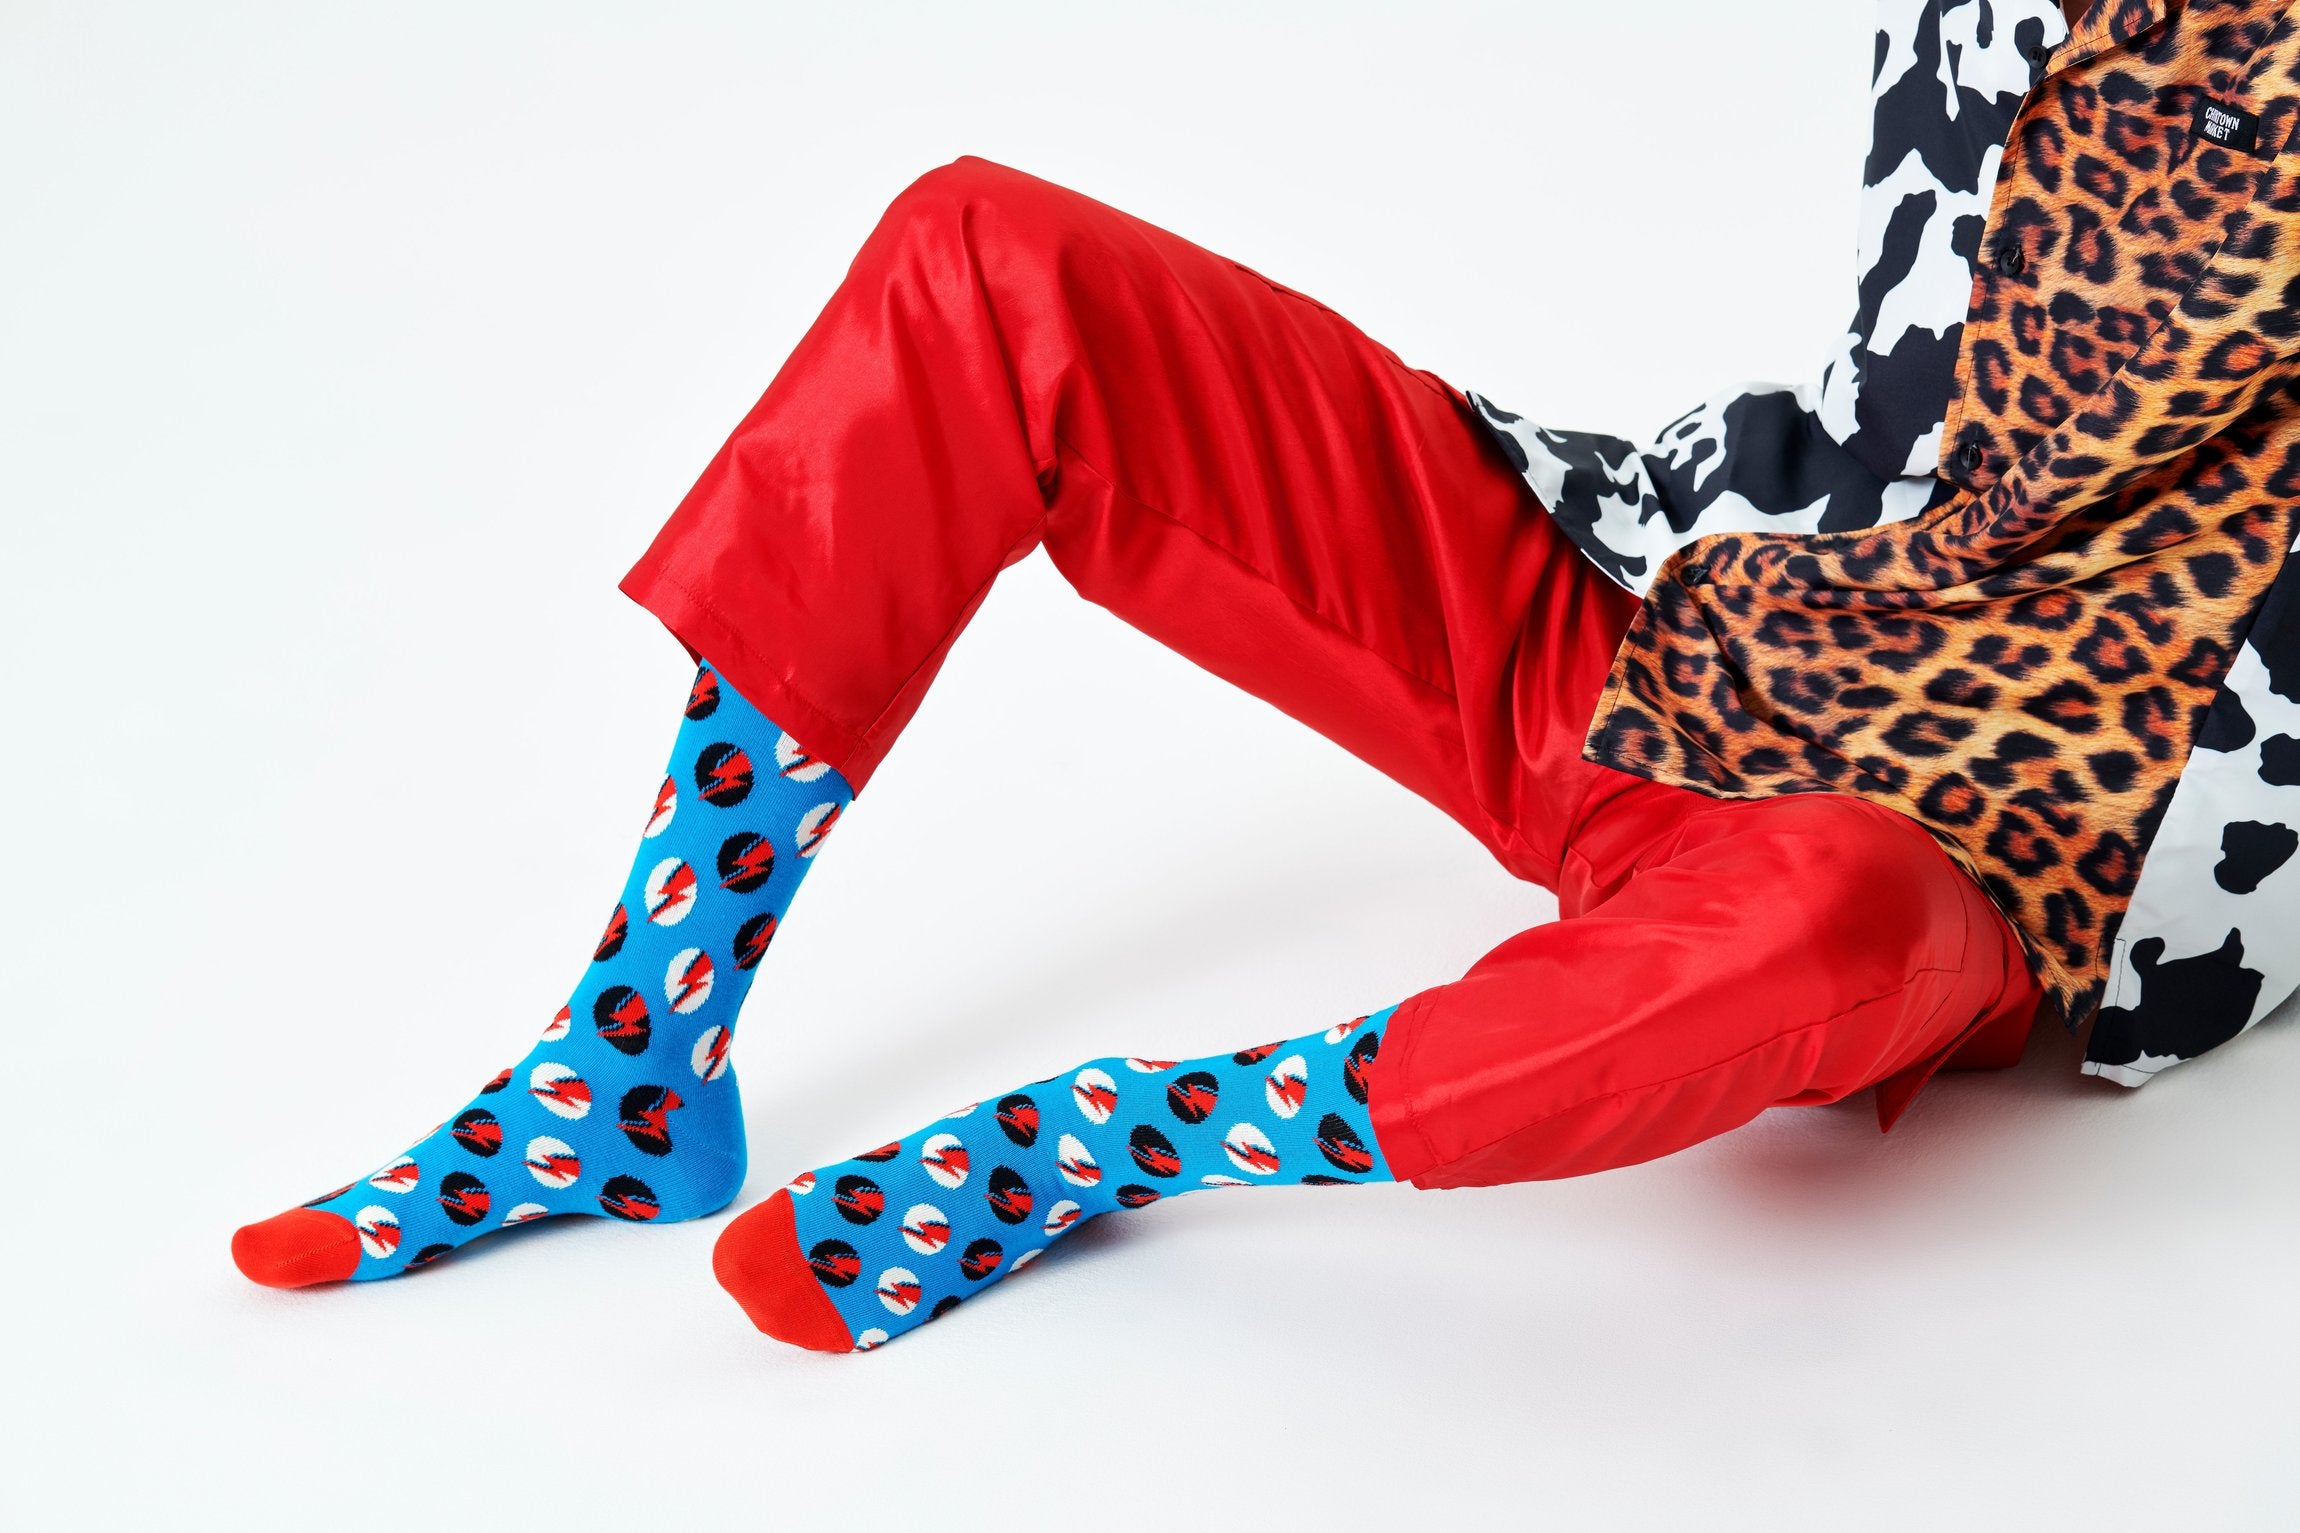 Modré ponožky Happy Socks x David Bowie, vzor Big Bowie Dot